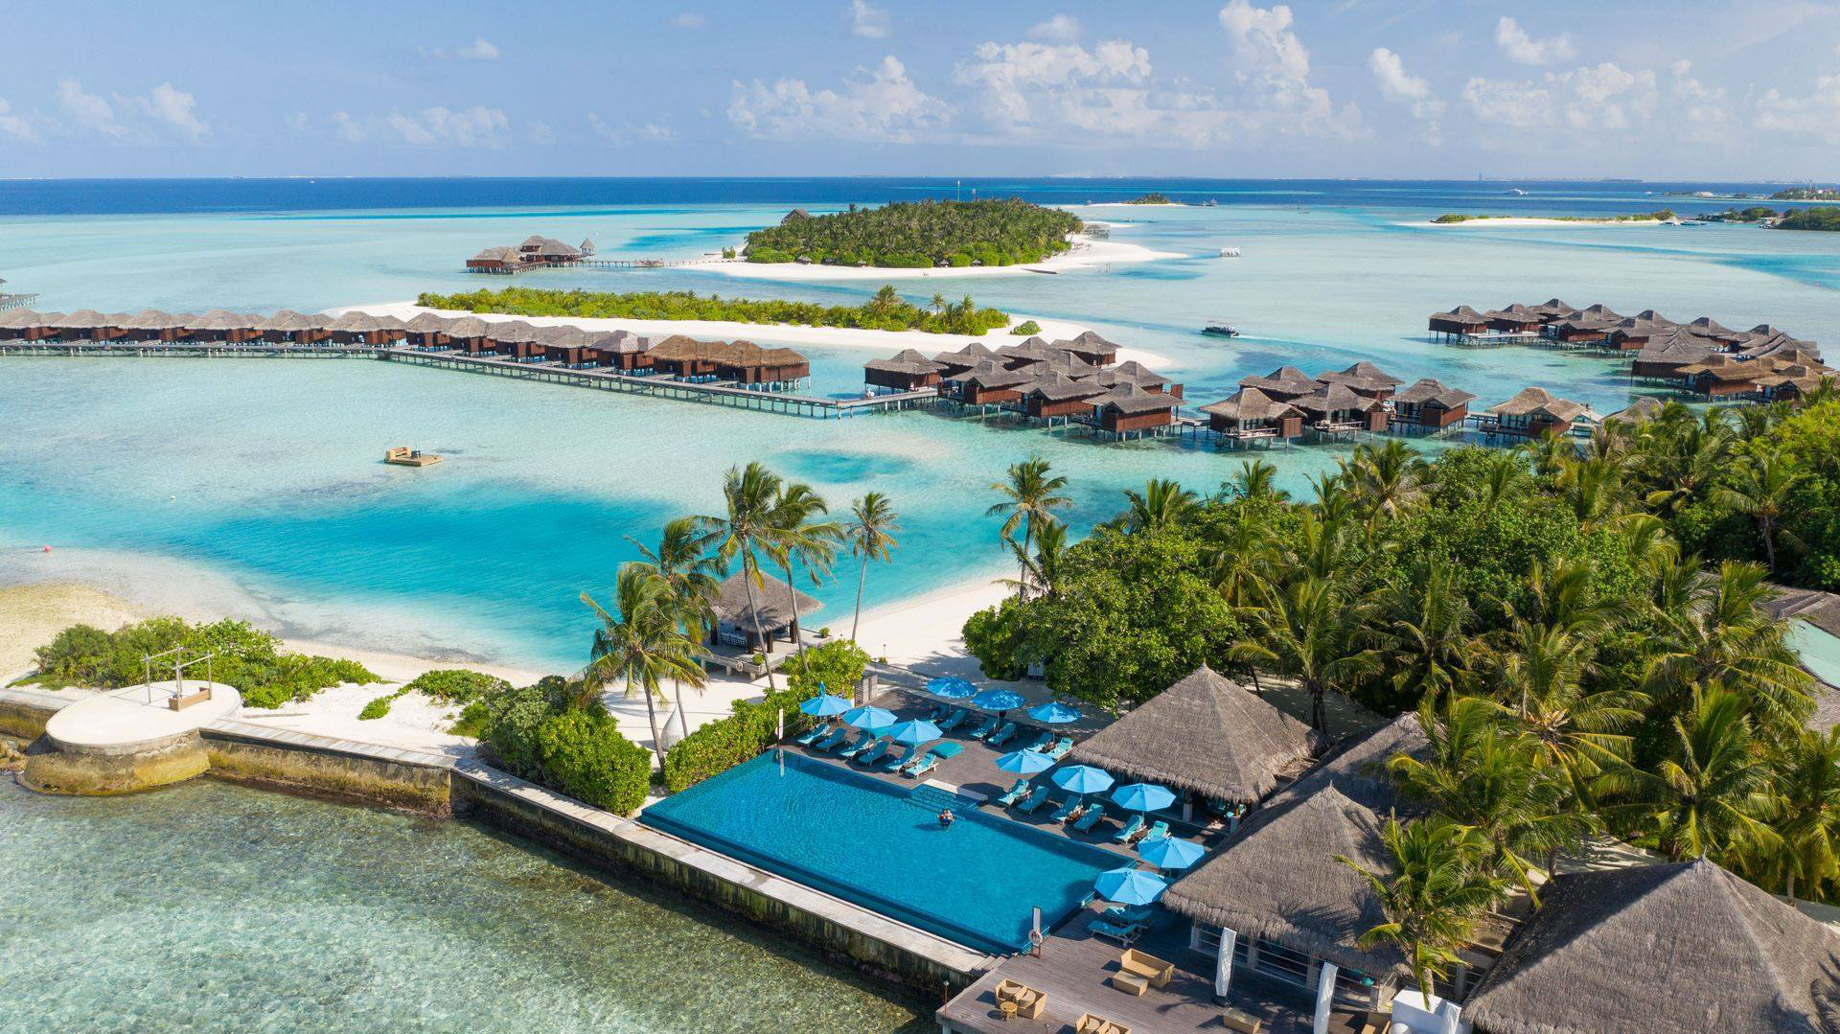 Anantara Veli Maldives Resort - South Male Atoll, Maldives - Resort Pool Aerial View